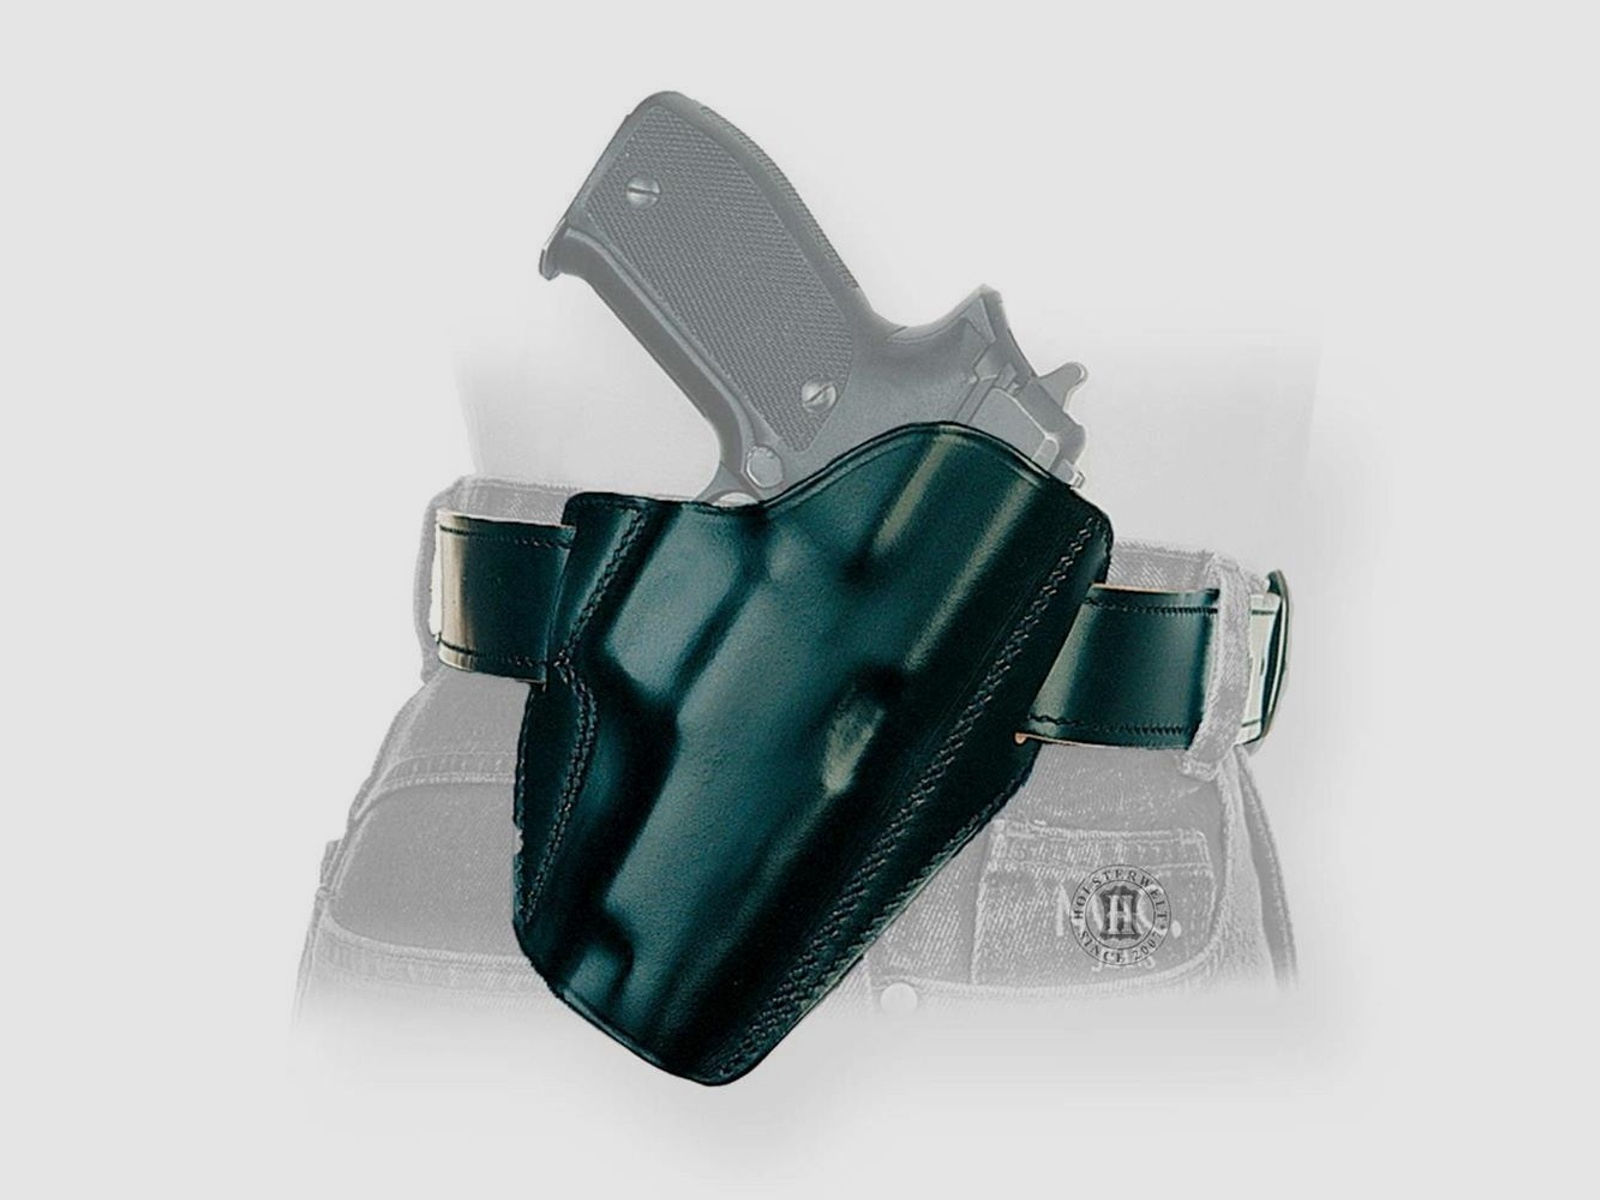 Schnellziehholster LIGHTNING "FBI" Glock 20/21 ,S&W SIGMA C, Zoraki 917-Rechtshänder-Schwarz